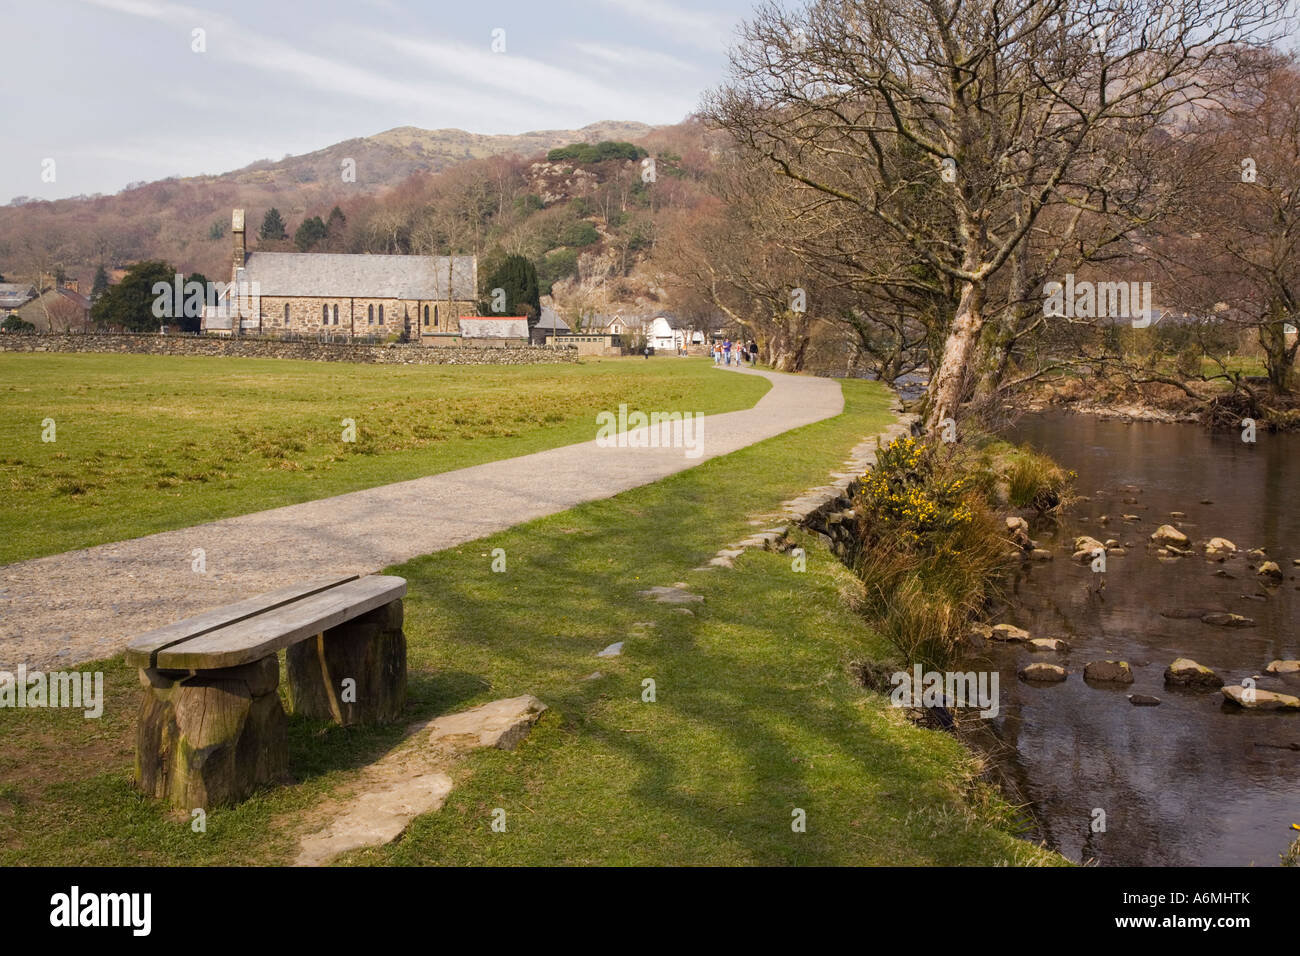 Chemin de randonnée le long de la rivière Glaslyn Afon près du village dans le parc national de Snowdonia. Le Nord du Pays de Galles de Beddgelert Gwynedd Grande-bretagne Royaume-Uni Banque D'Images